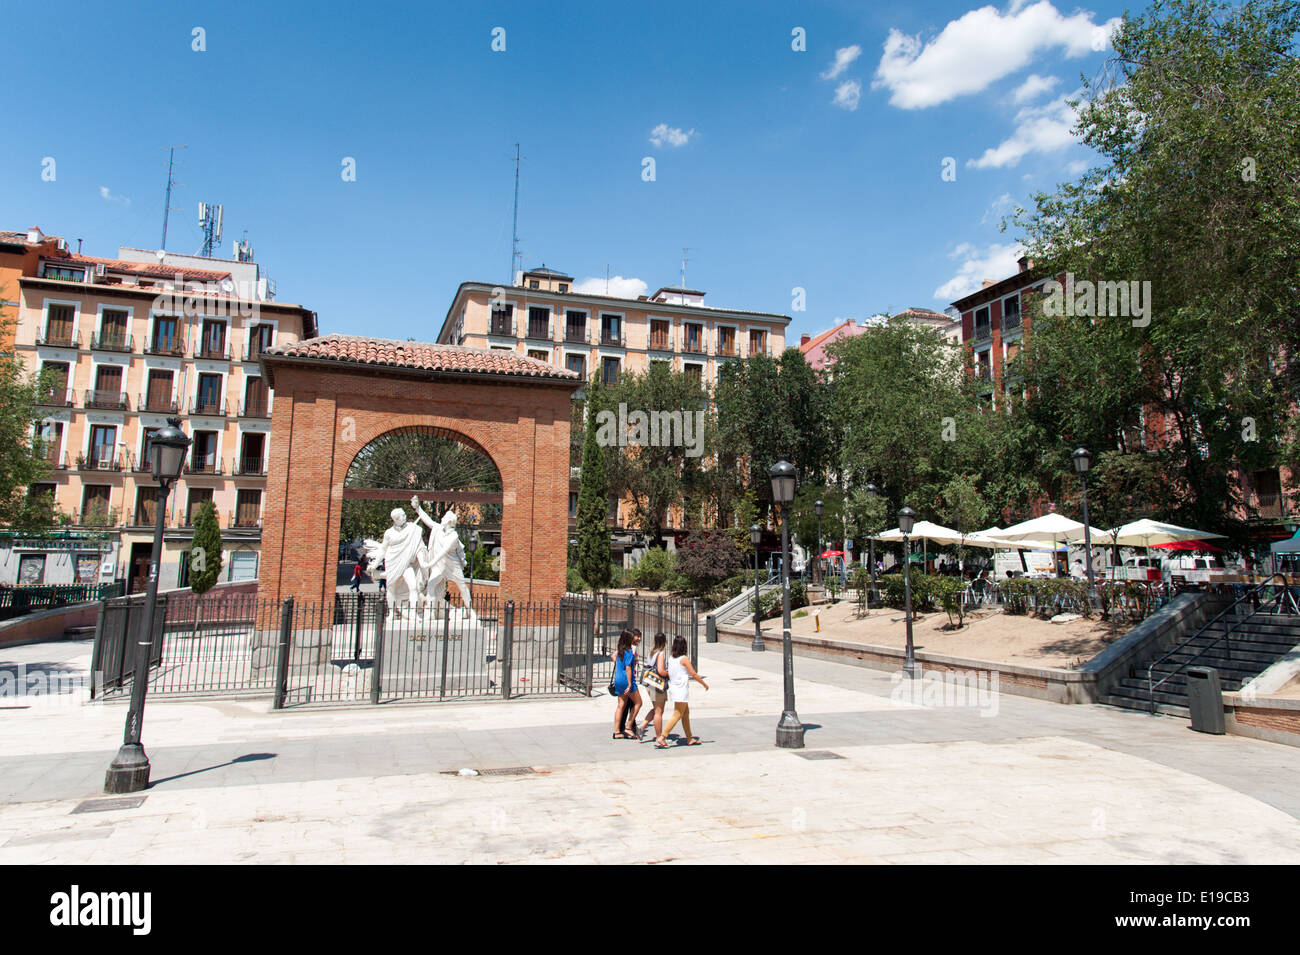 Plaza del Dos de Mayo, quartier Malasana, Madrid, Espagne Banque D'Images